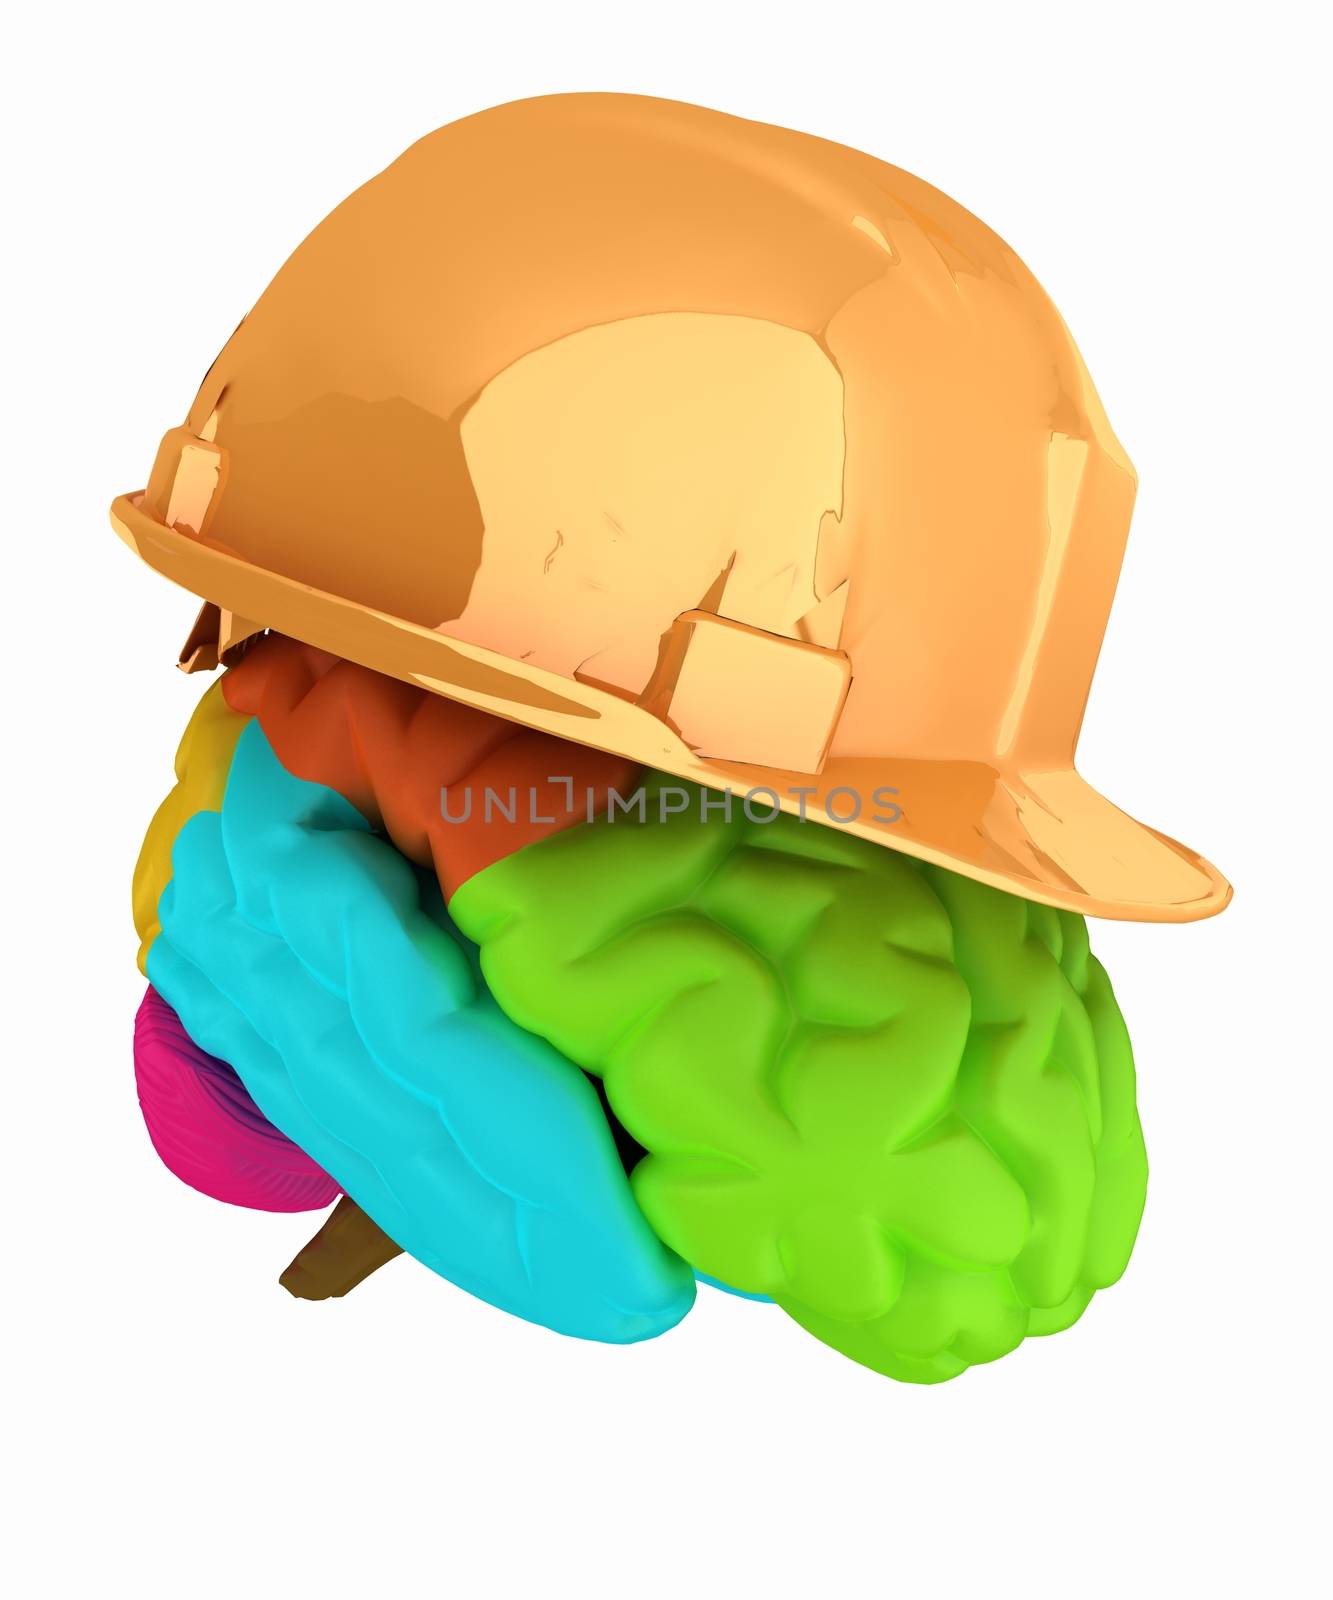 hard hat on brain by Guru3D